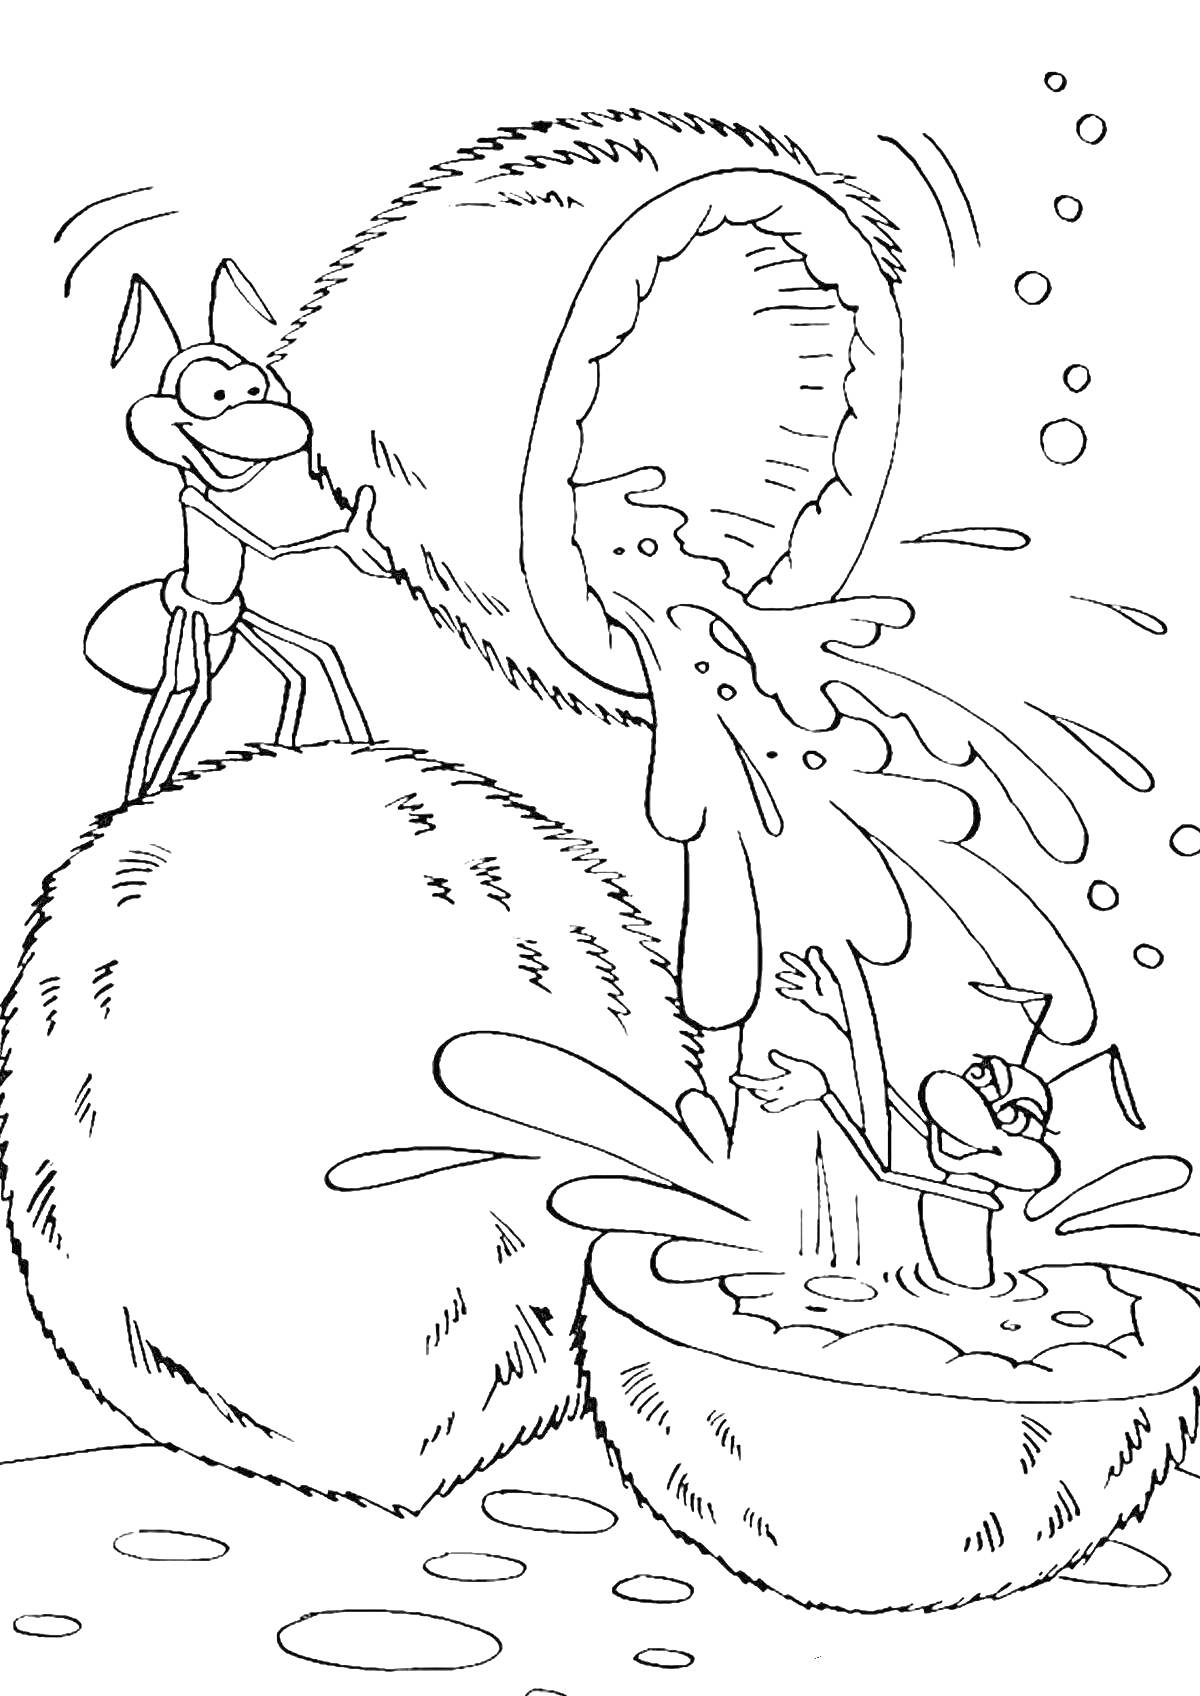 Муравей и персонаж в кокосовой воде среди кокосов